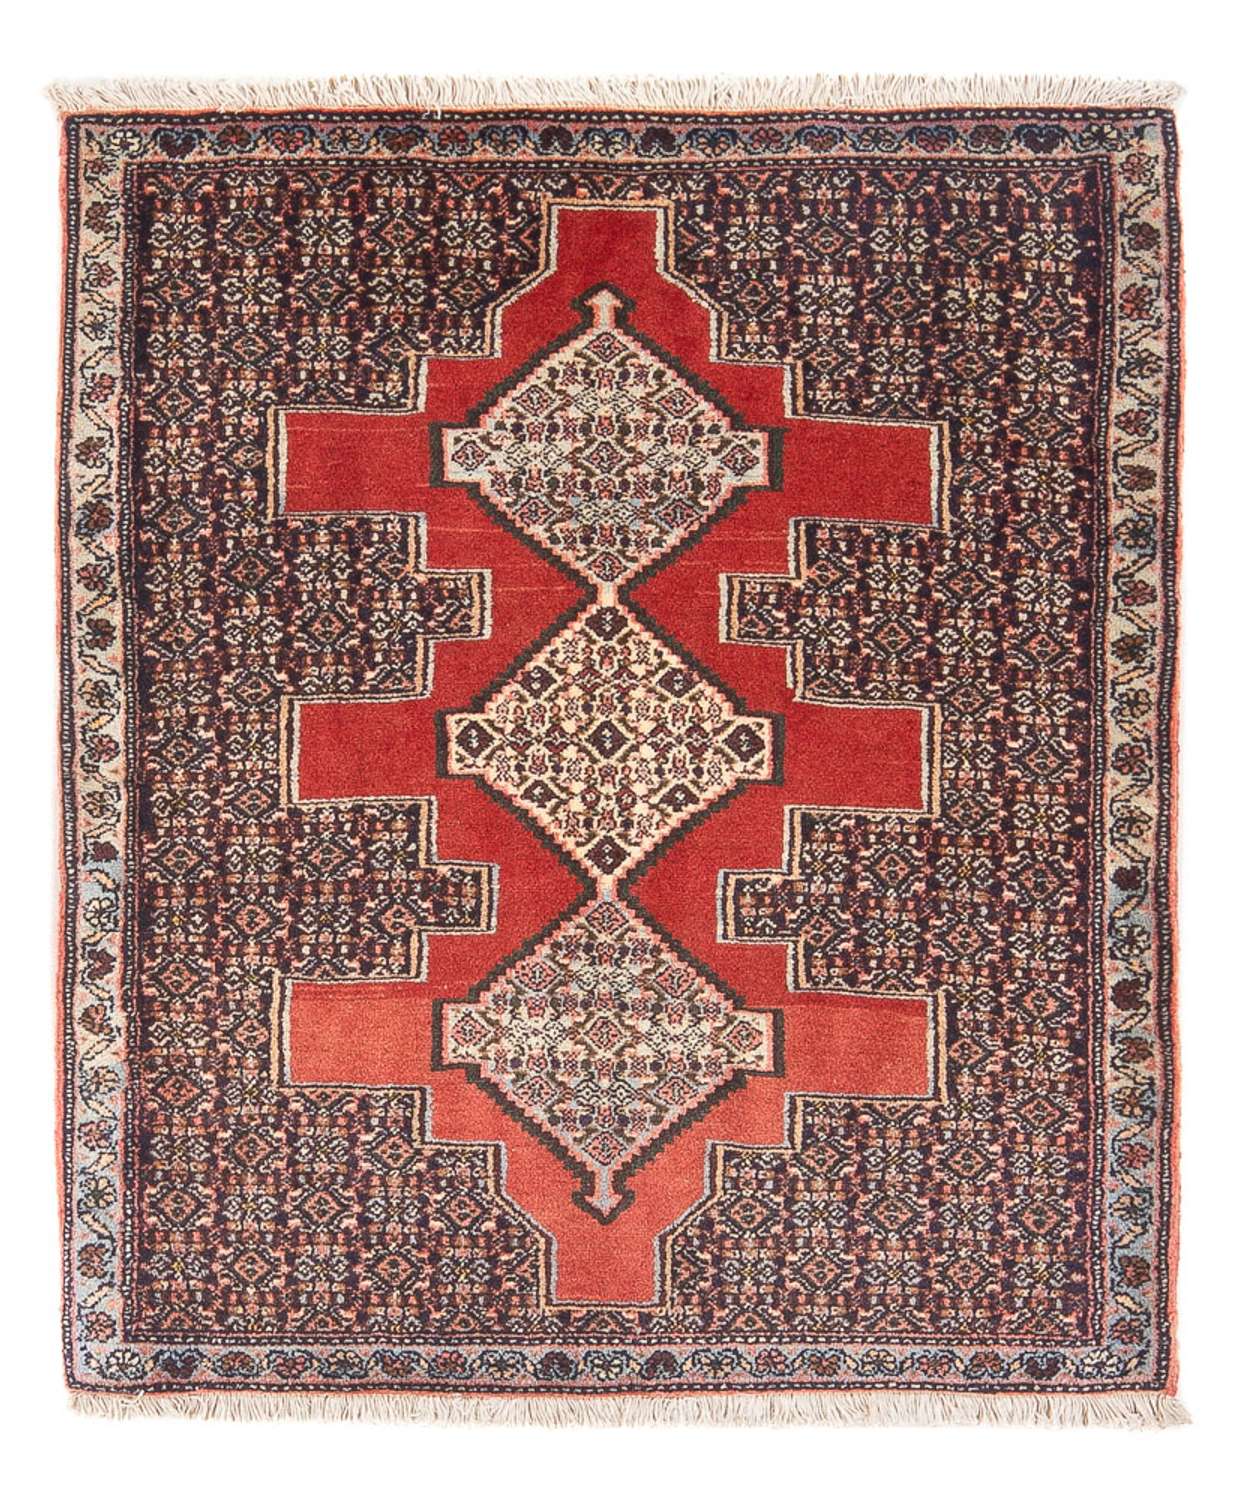 Persisk matta - Classic - 103 x 78 cm - röd